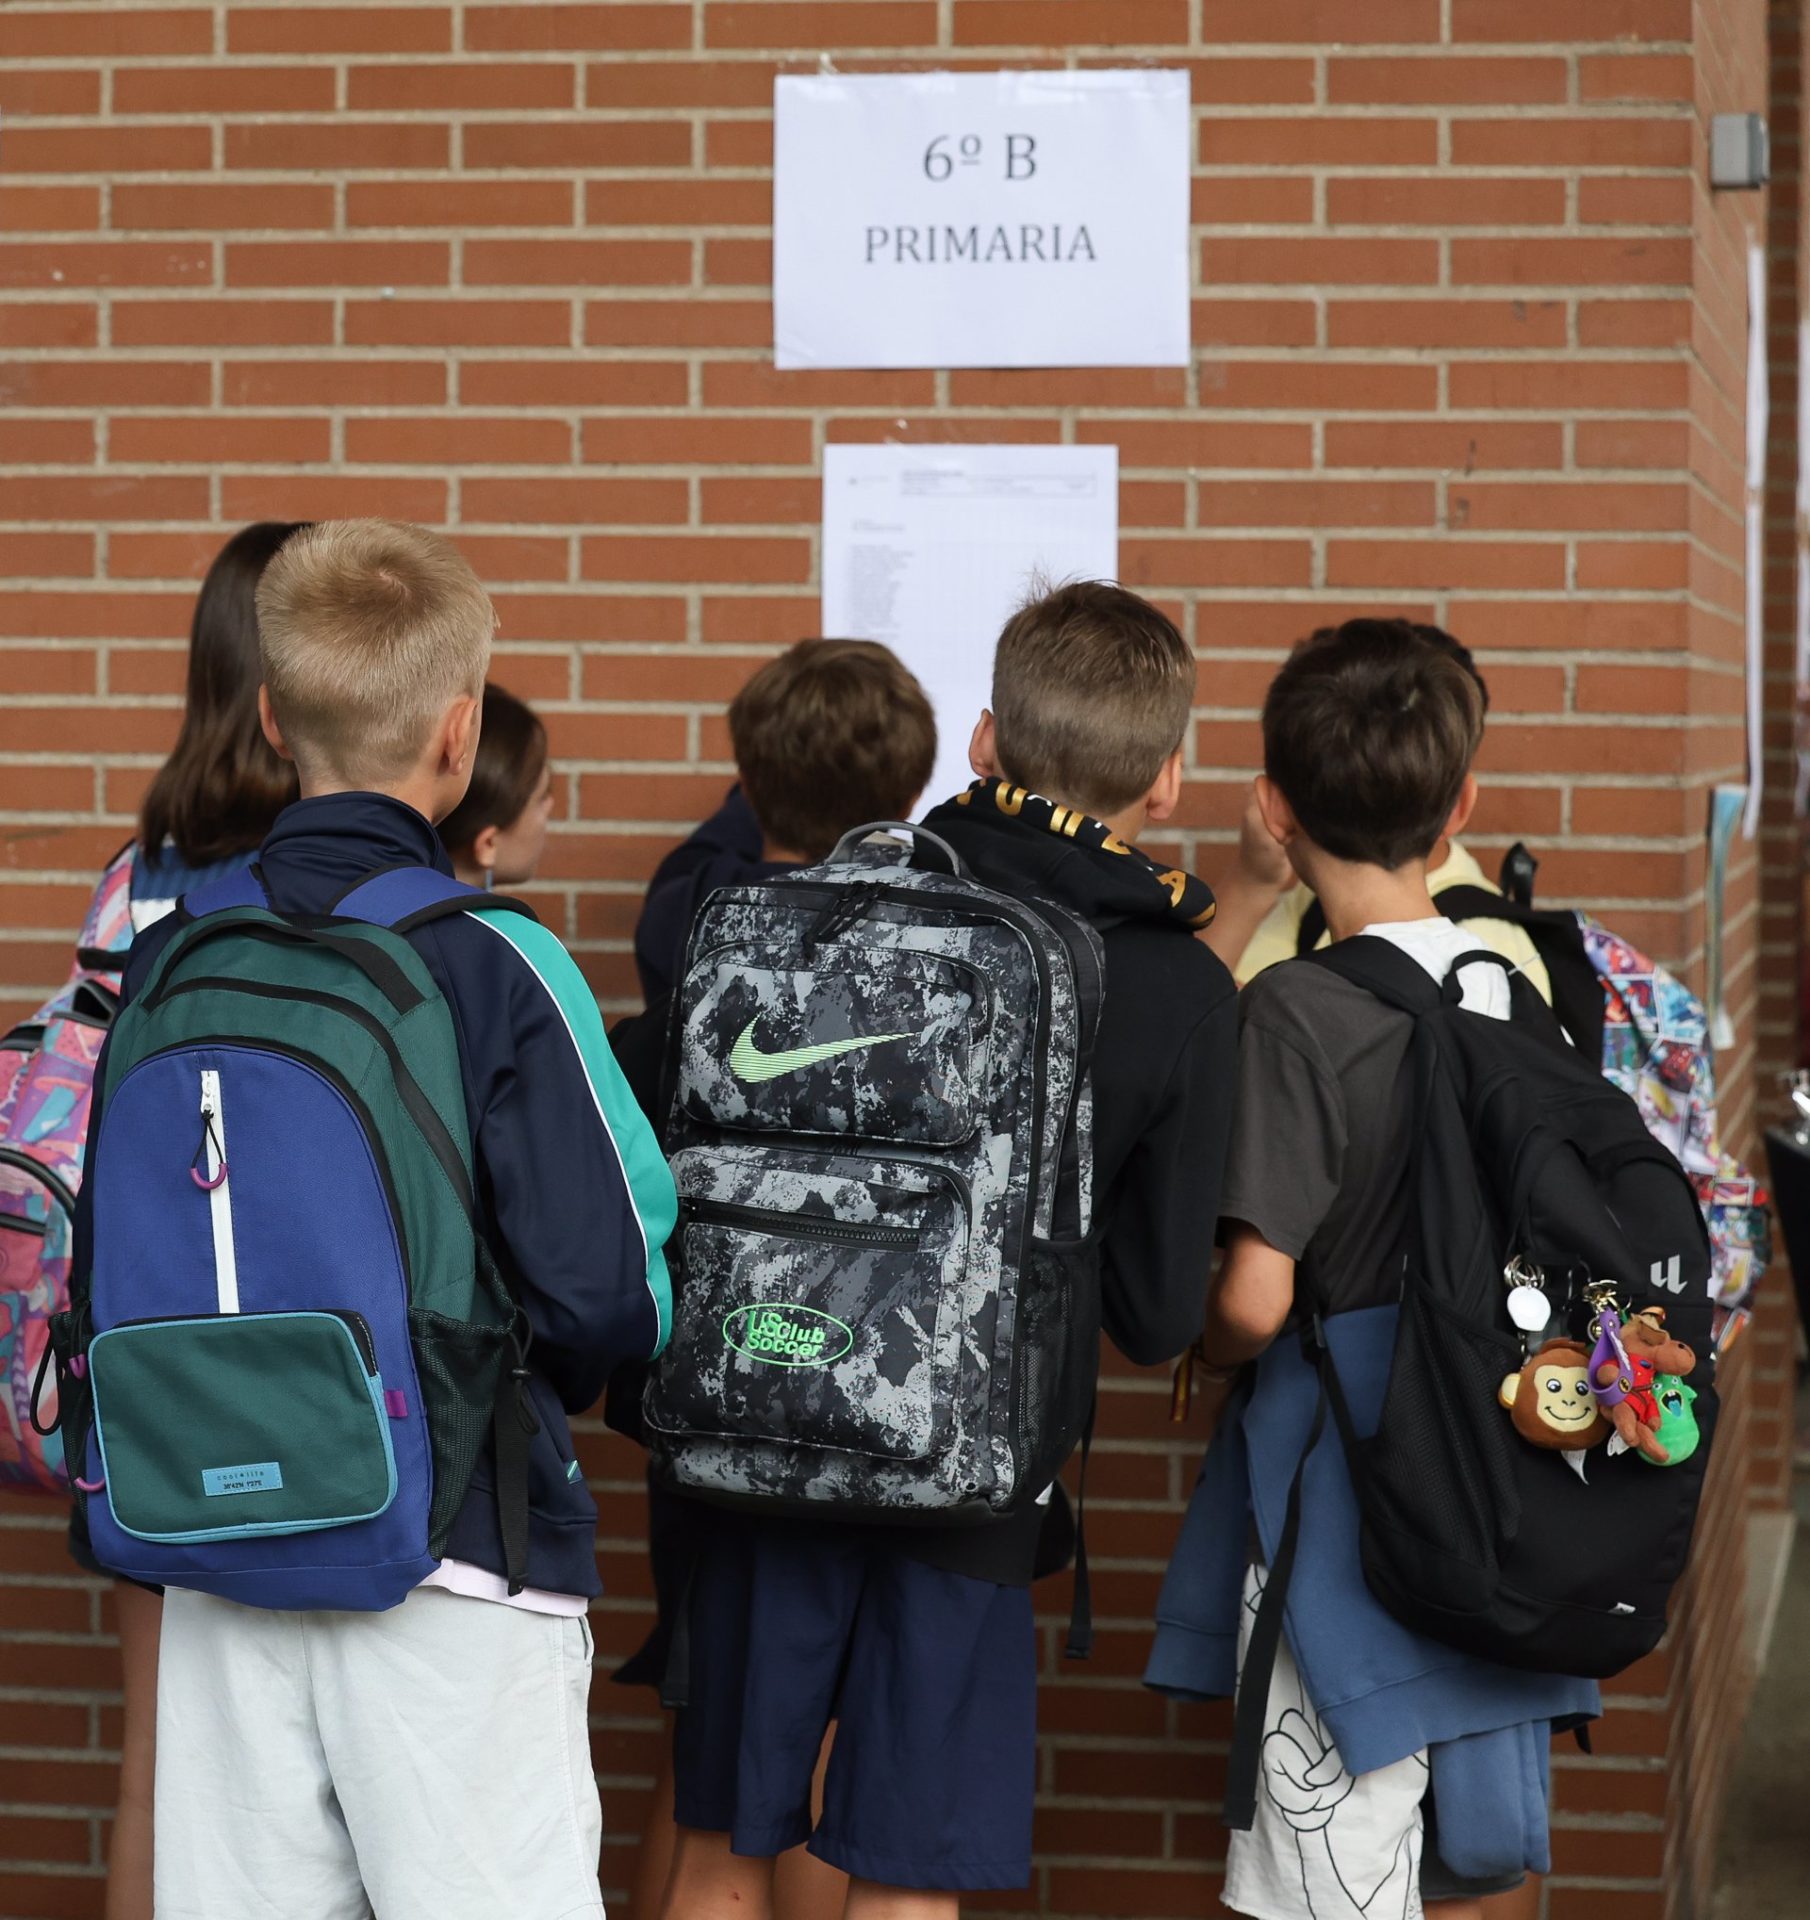 Varios alumnos con mochilas ven donde está su aula en el patio del colegio. - Marta Fernández Jara - Europa Press